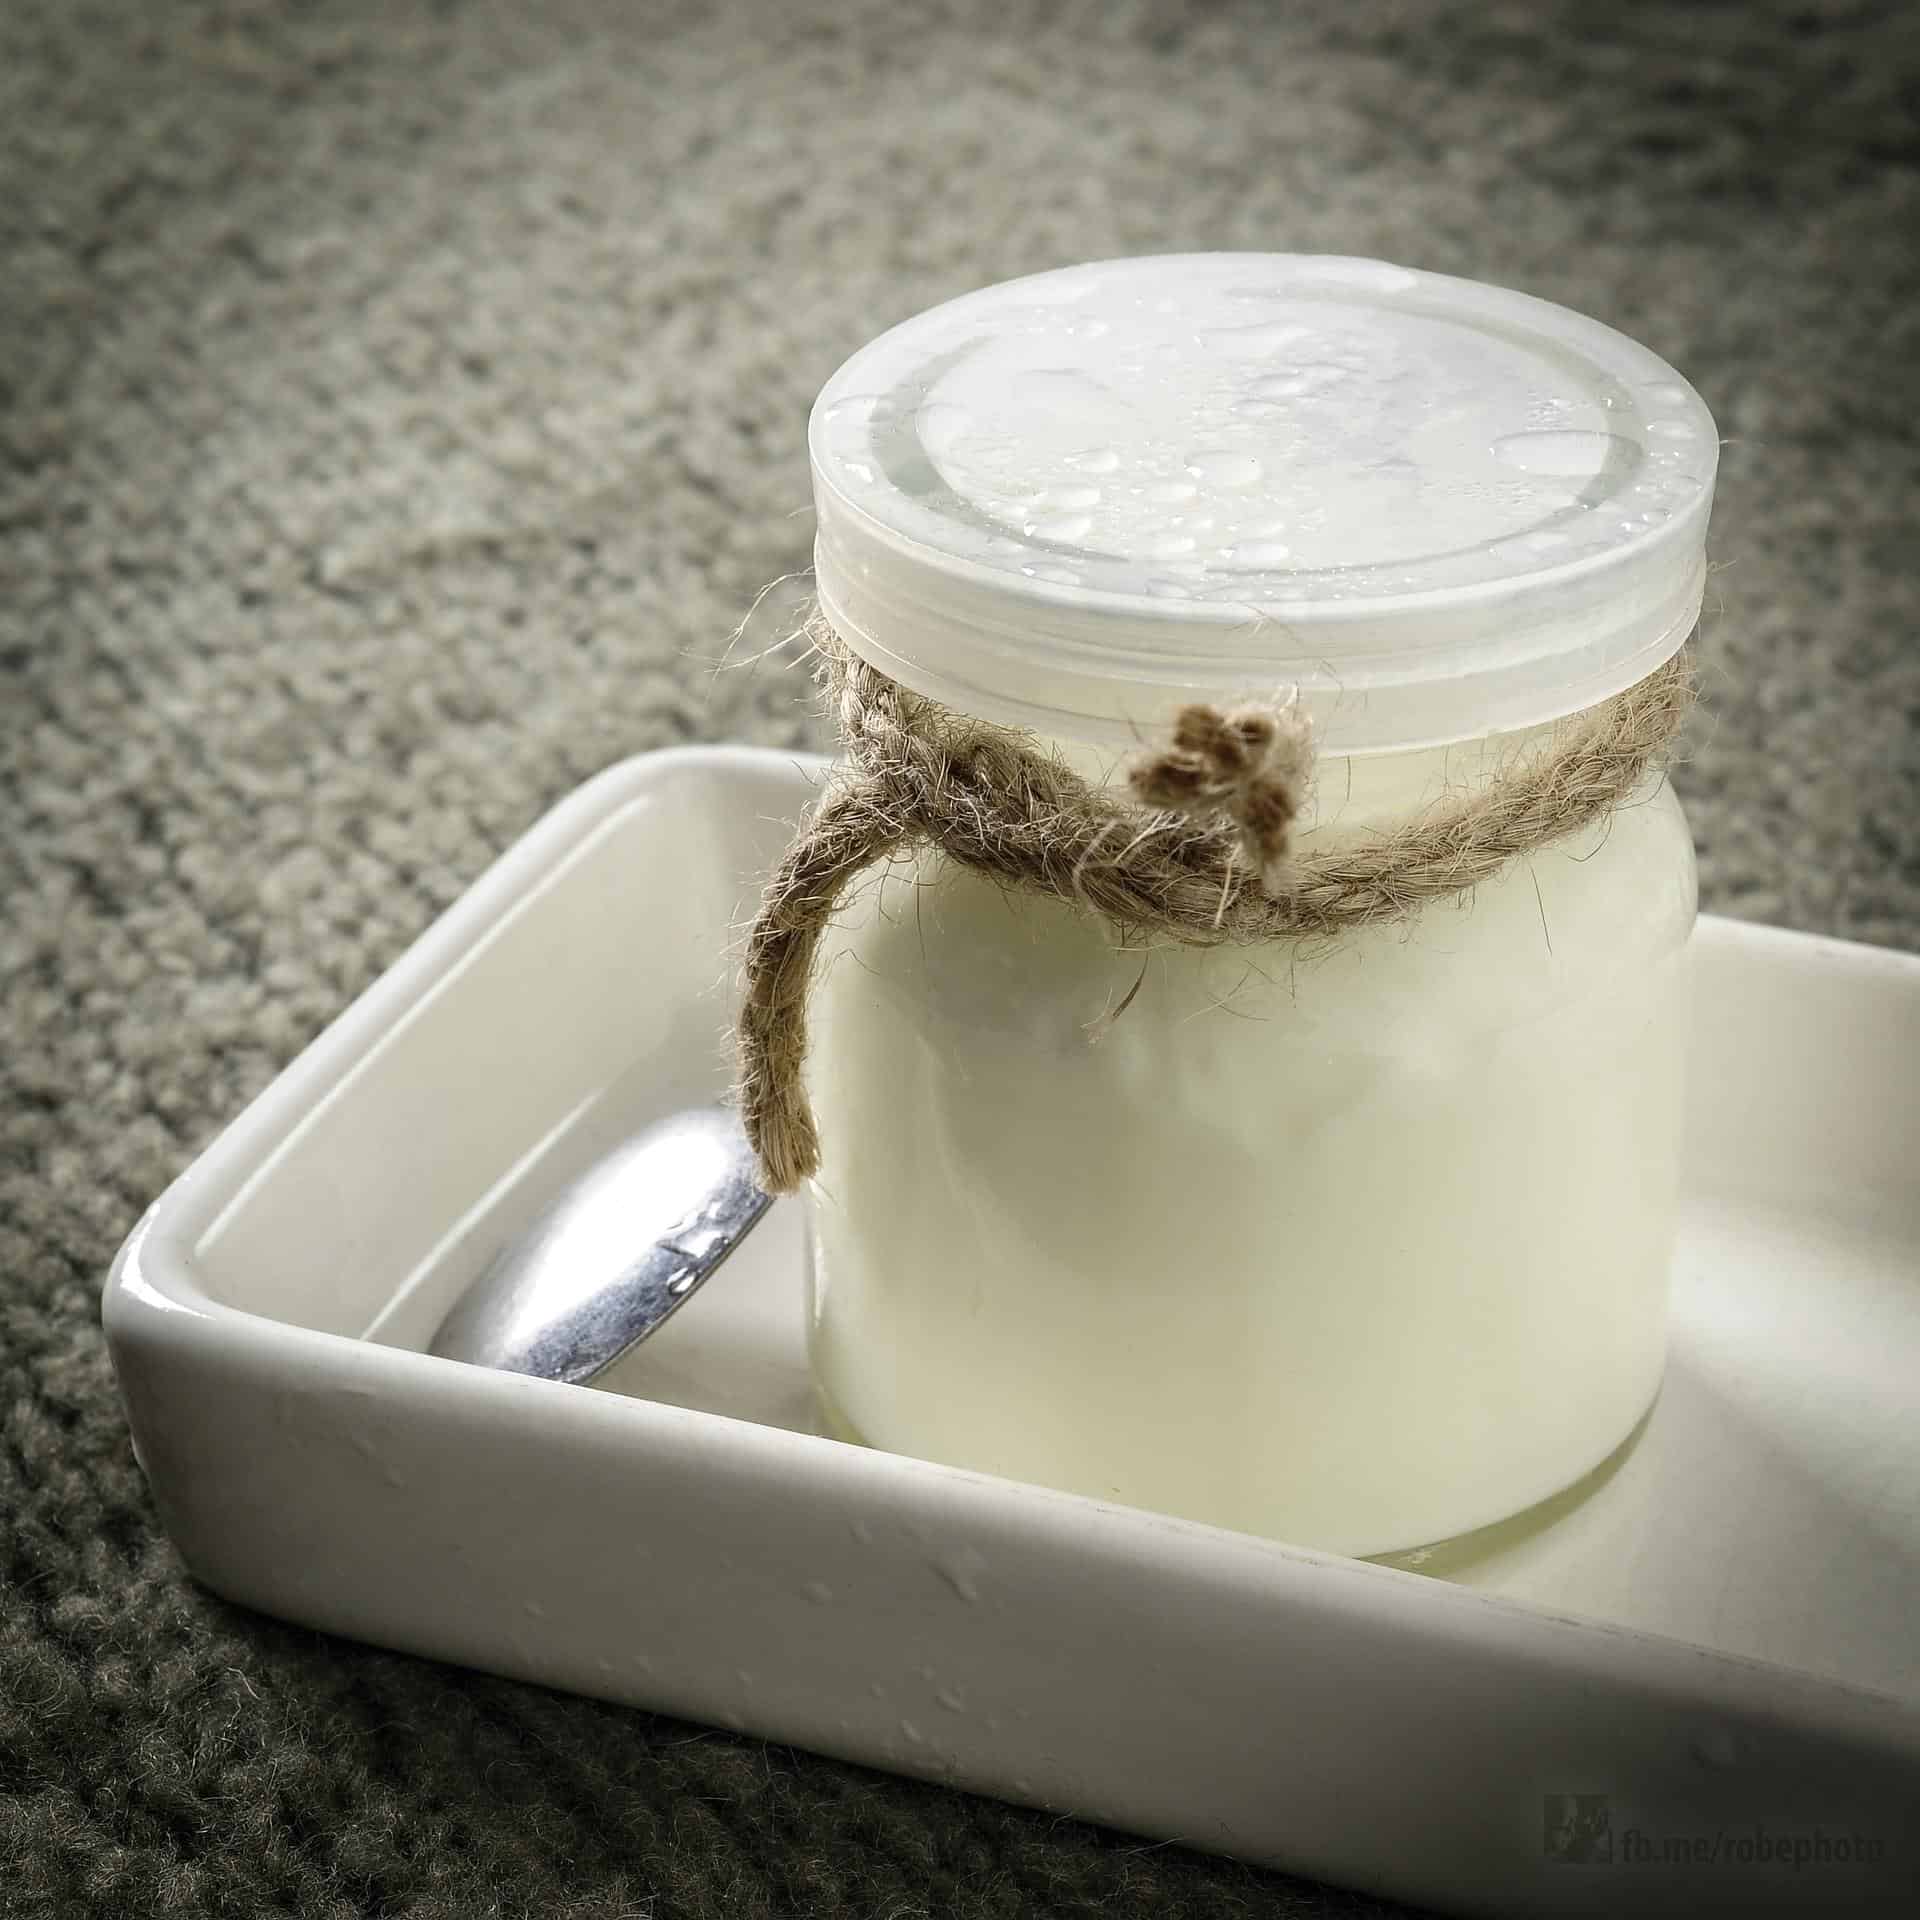 Yogurt in a Jar